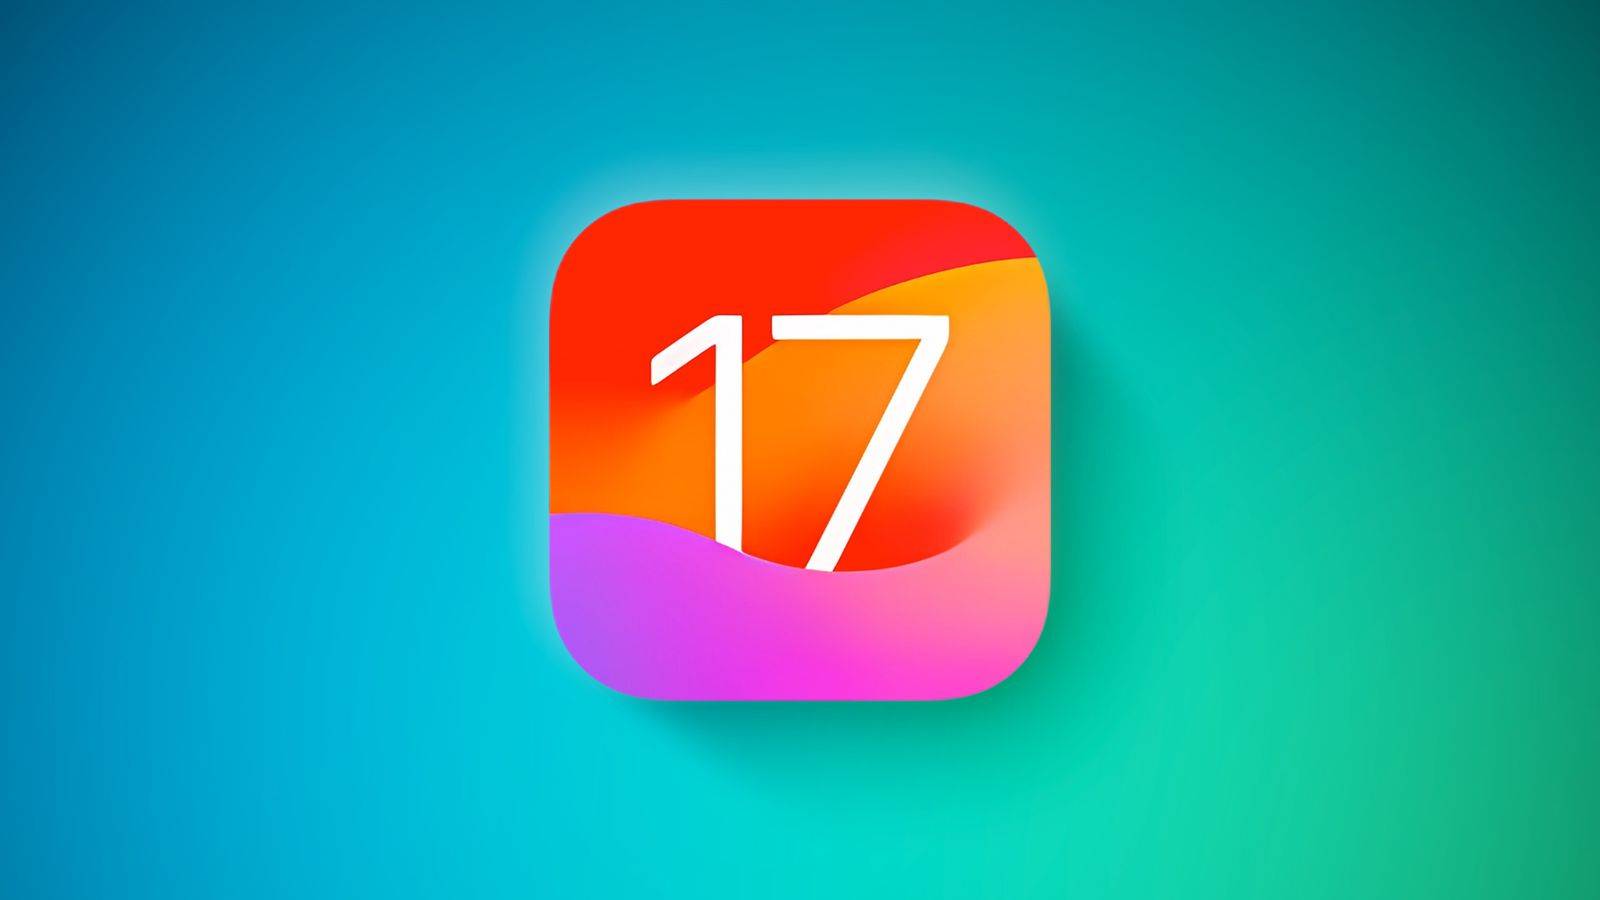 Veröffentlichung von iOS 17.1 am 24. Oktober, iPhone 12 Strahlung Frankreich